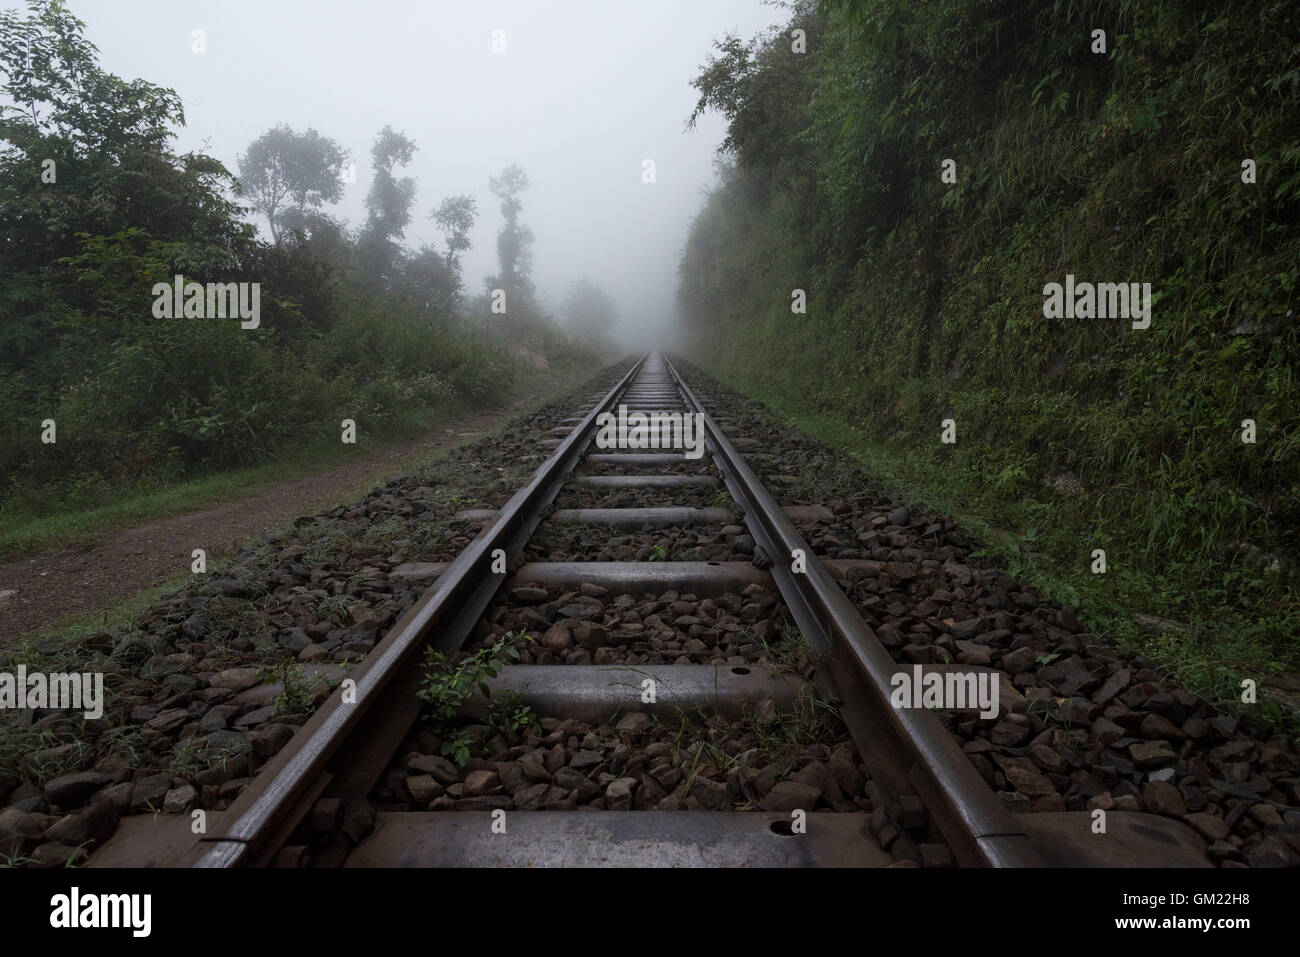 Railway line of Kalka Shimla world heritage site Stock Photo